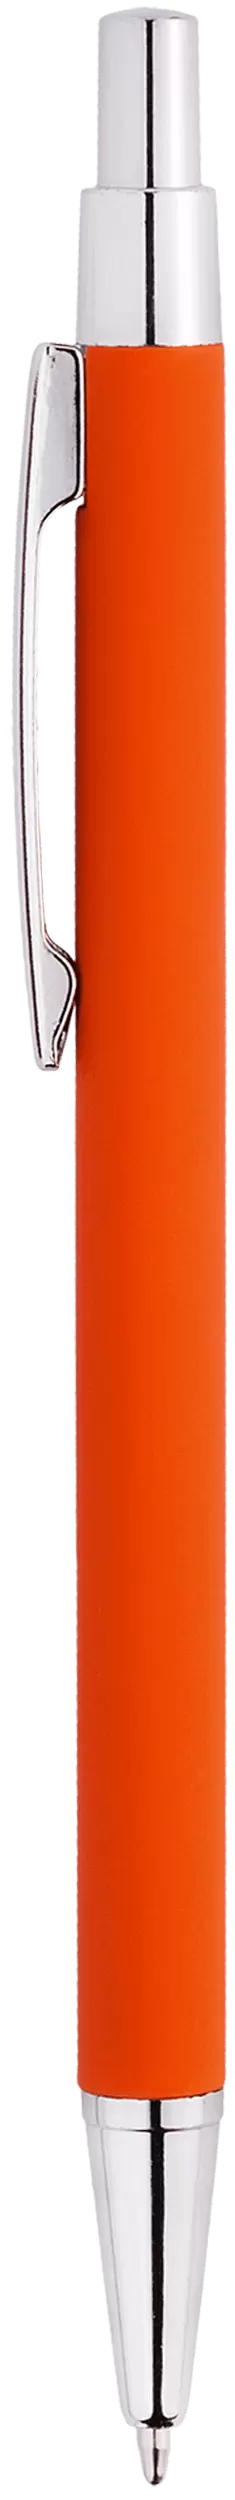 Ручка MOTIVE SOFT Оранжевая 1100.05